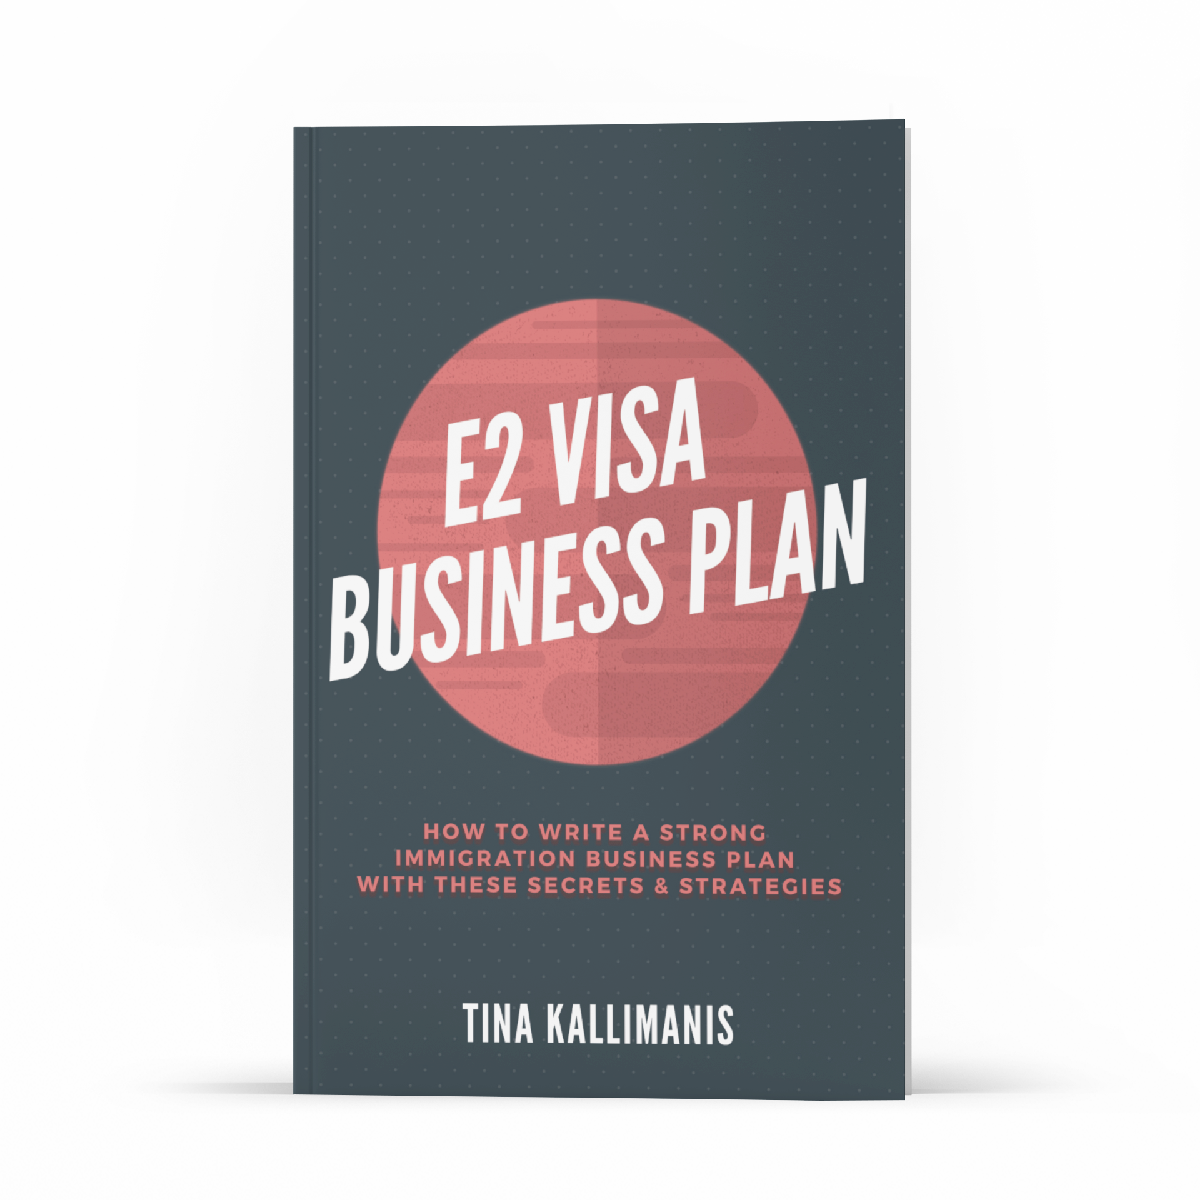 E2 Visa Business Plan PDF